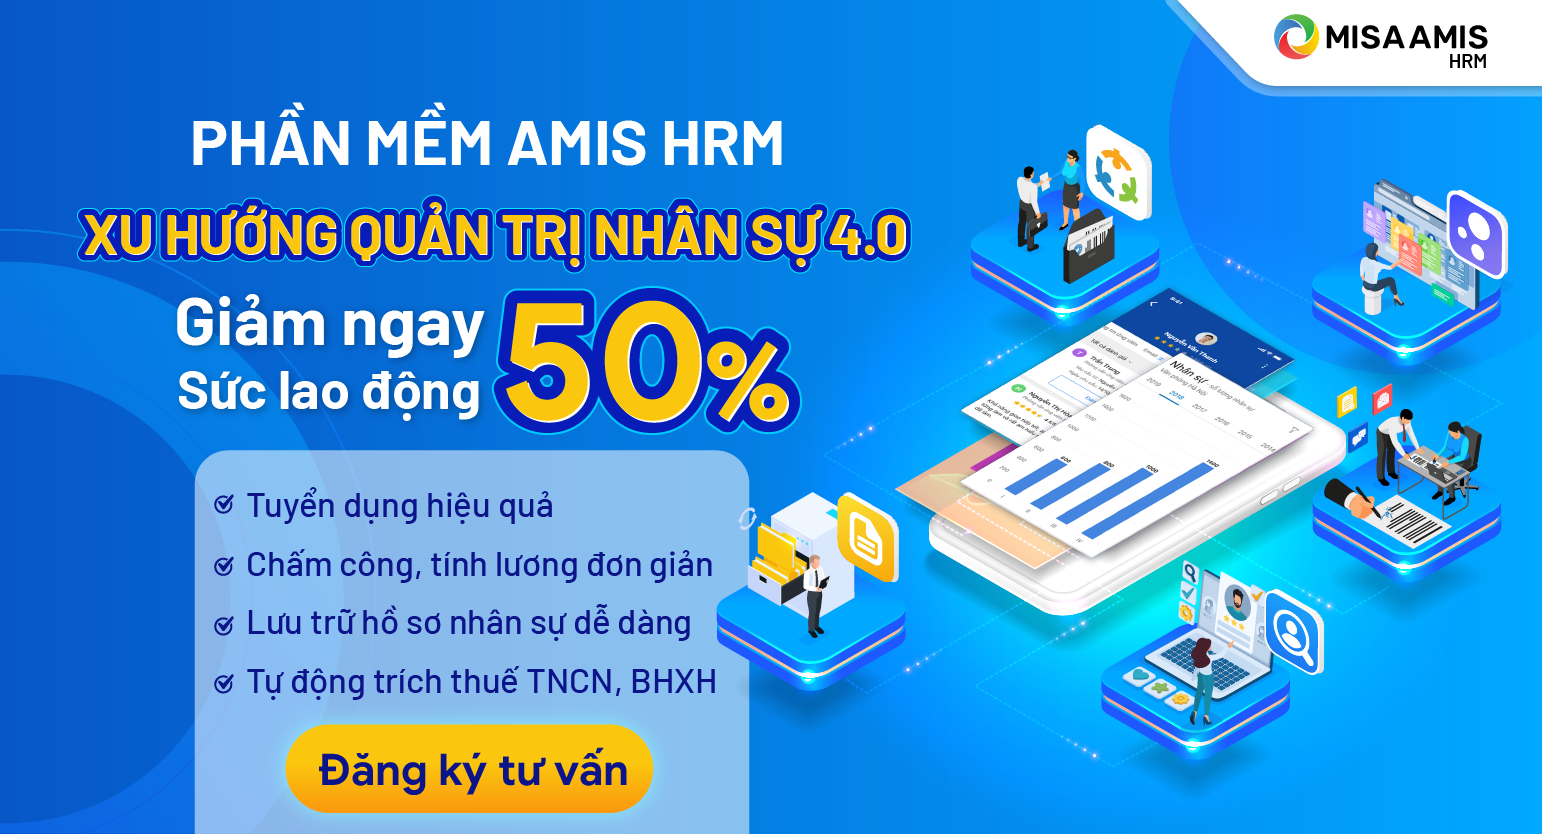 Phần mềm quản trị nhân sự toàn diện MISA AMIS HRM là giải pháp hoàn hảo cho doanh nghiệp